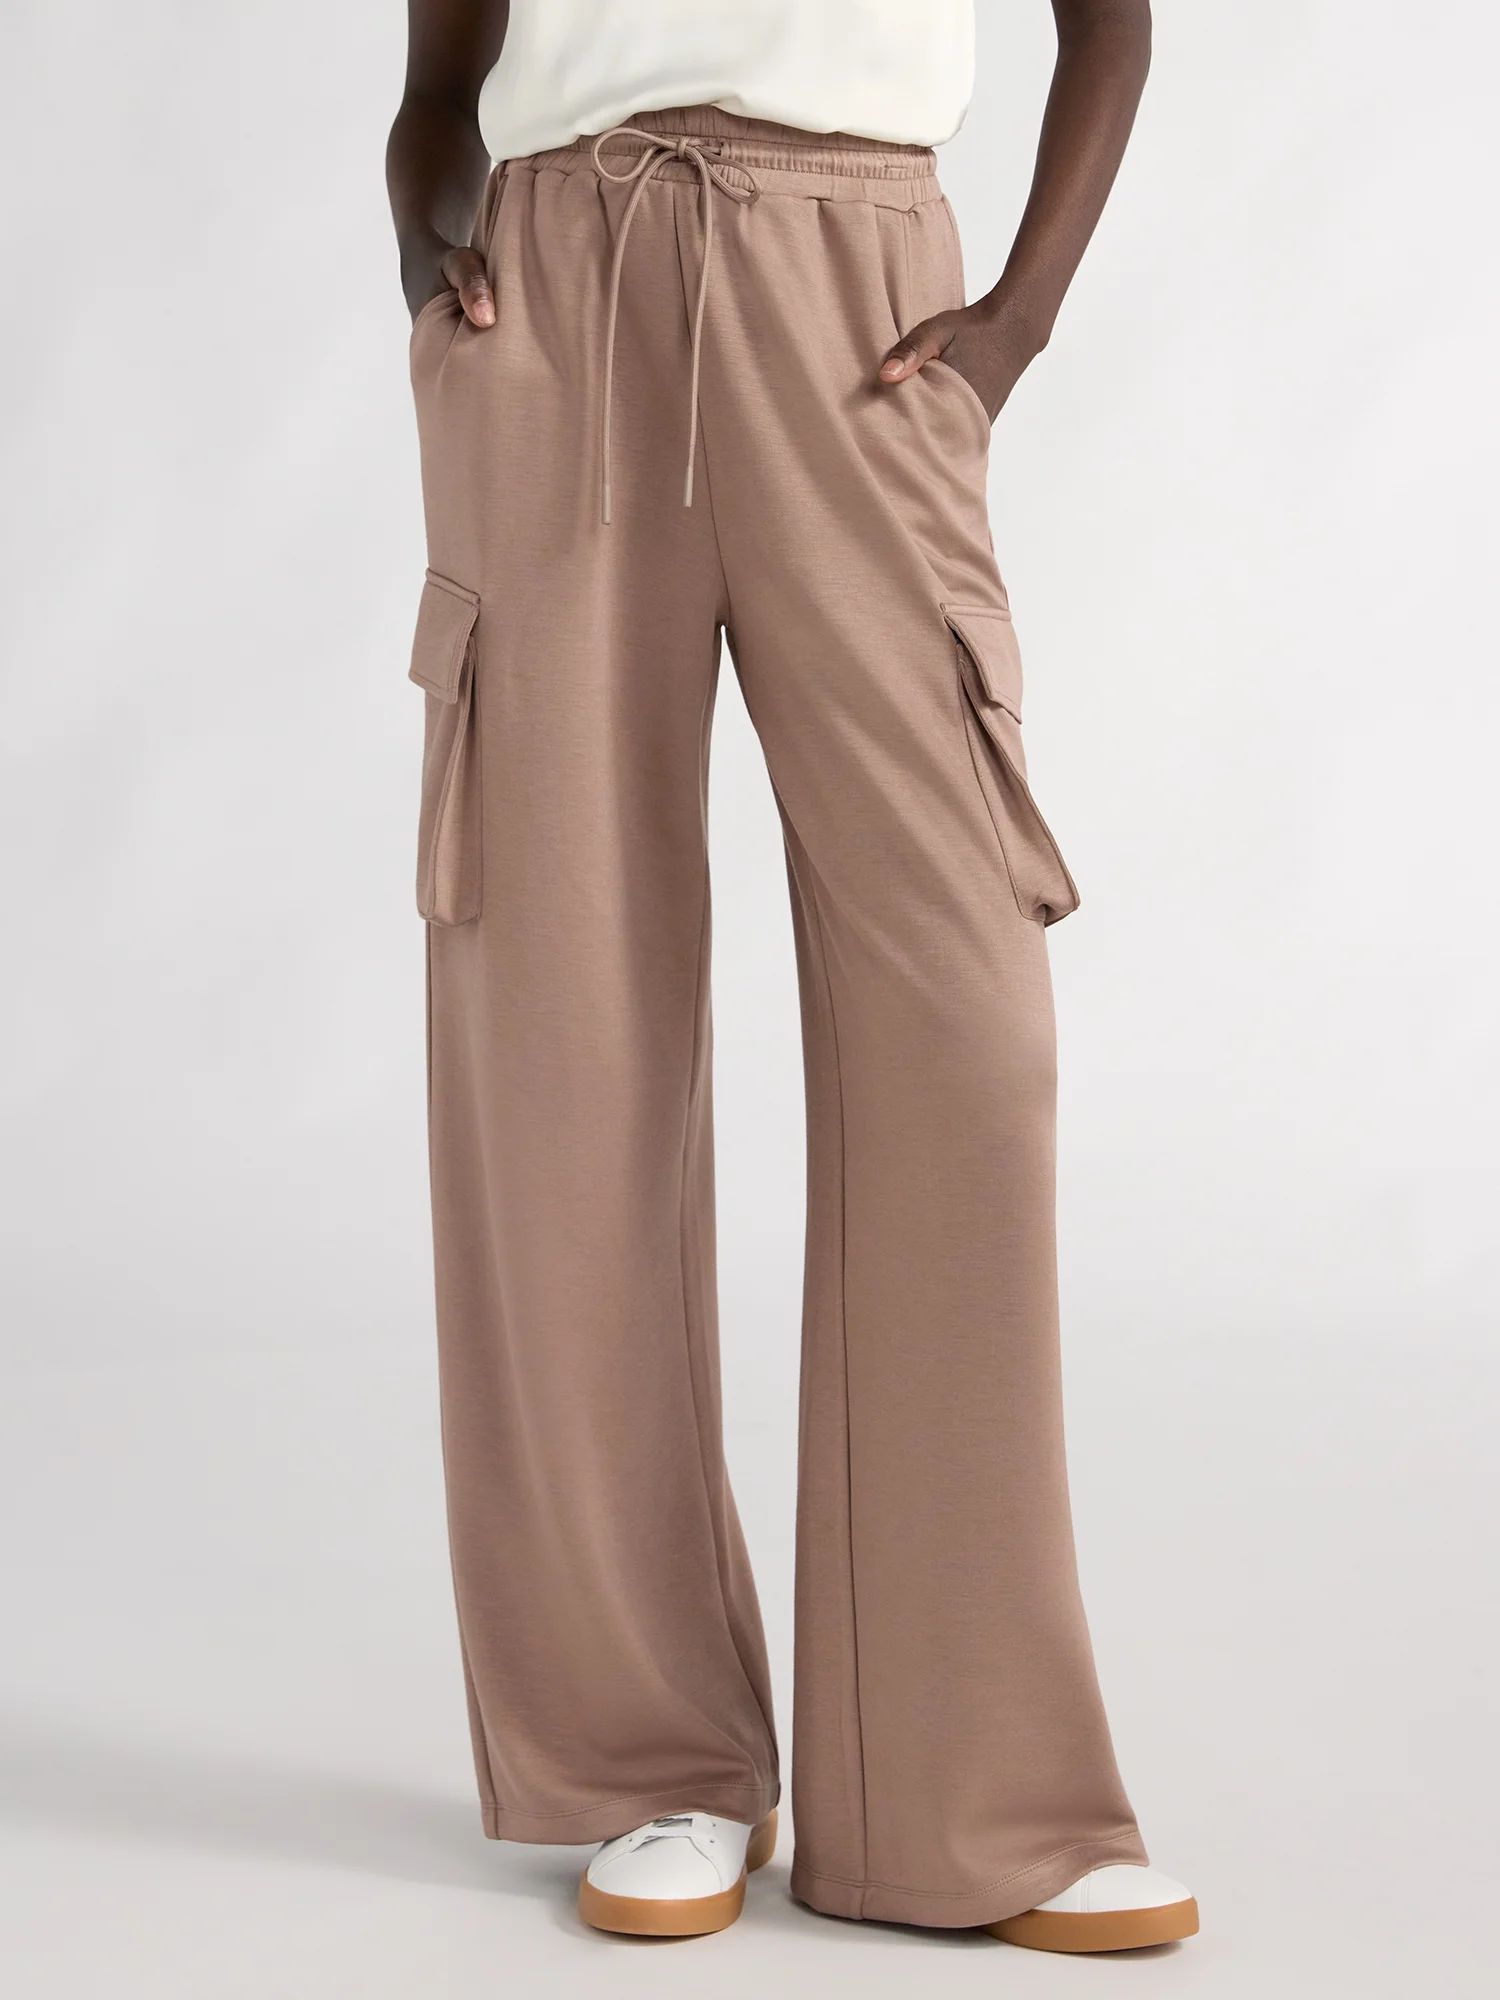 Scoop Women's Ultimate ScubaKnit Wide Leg Cargo Pants, Sizes XS-XXL | Walmart (US)